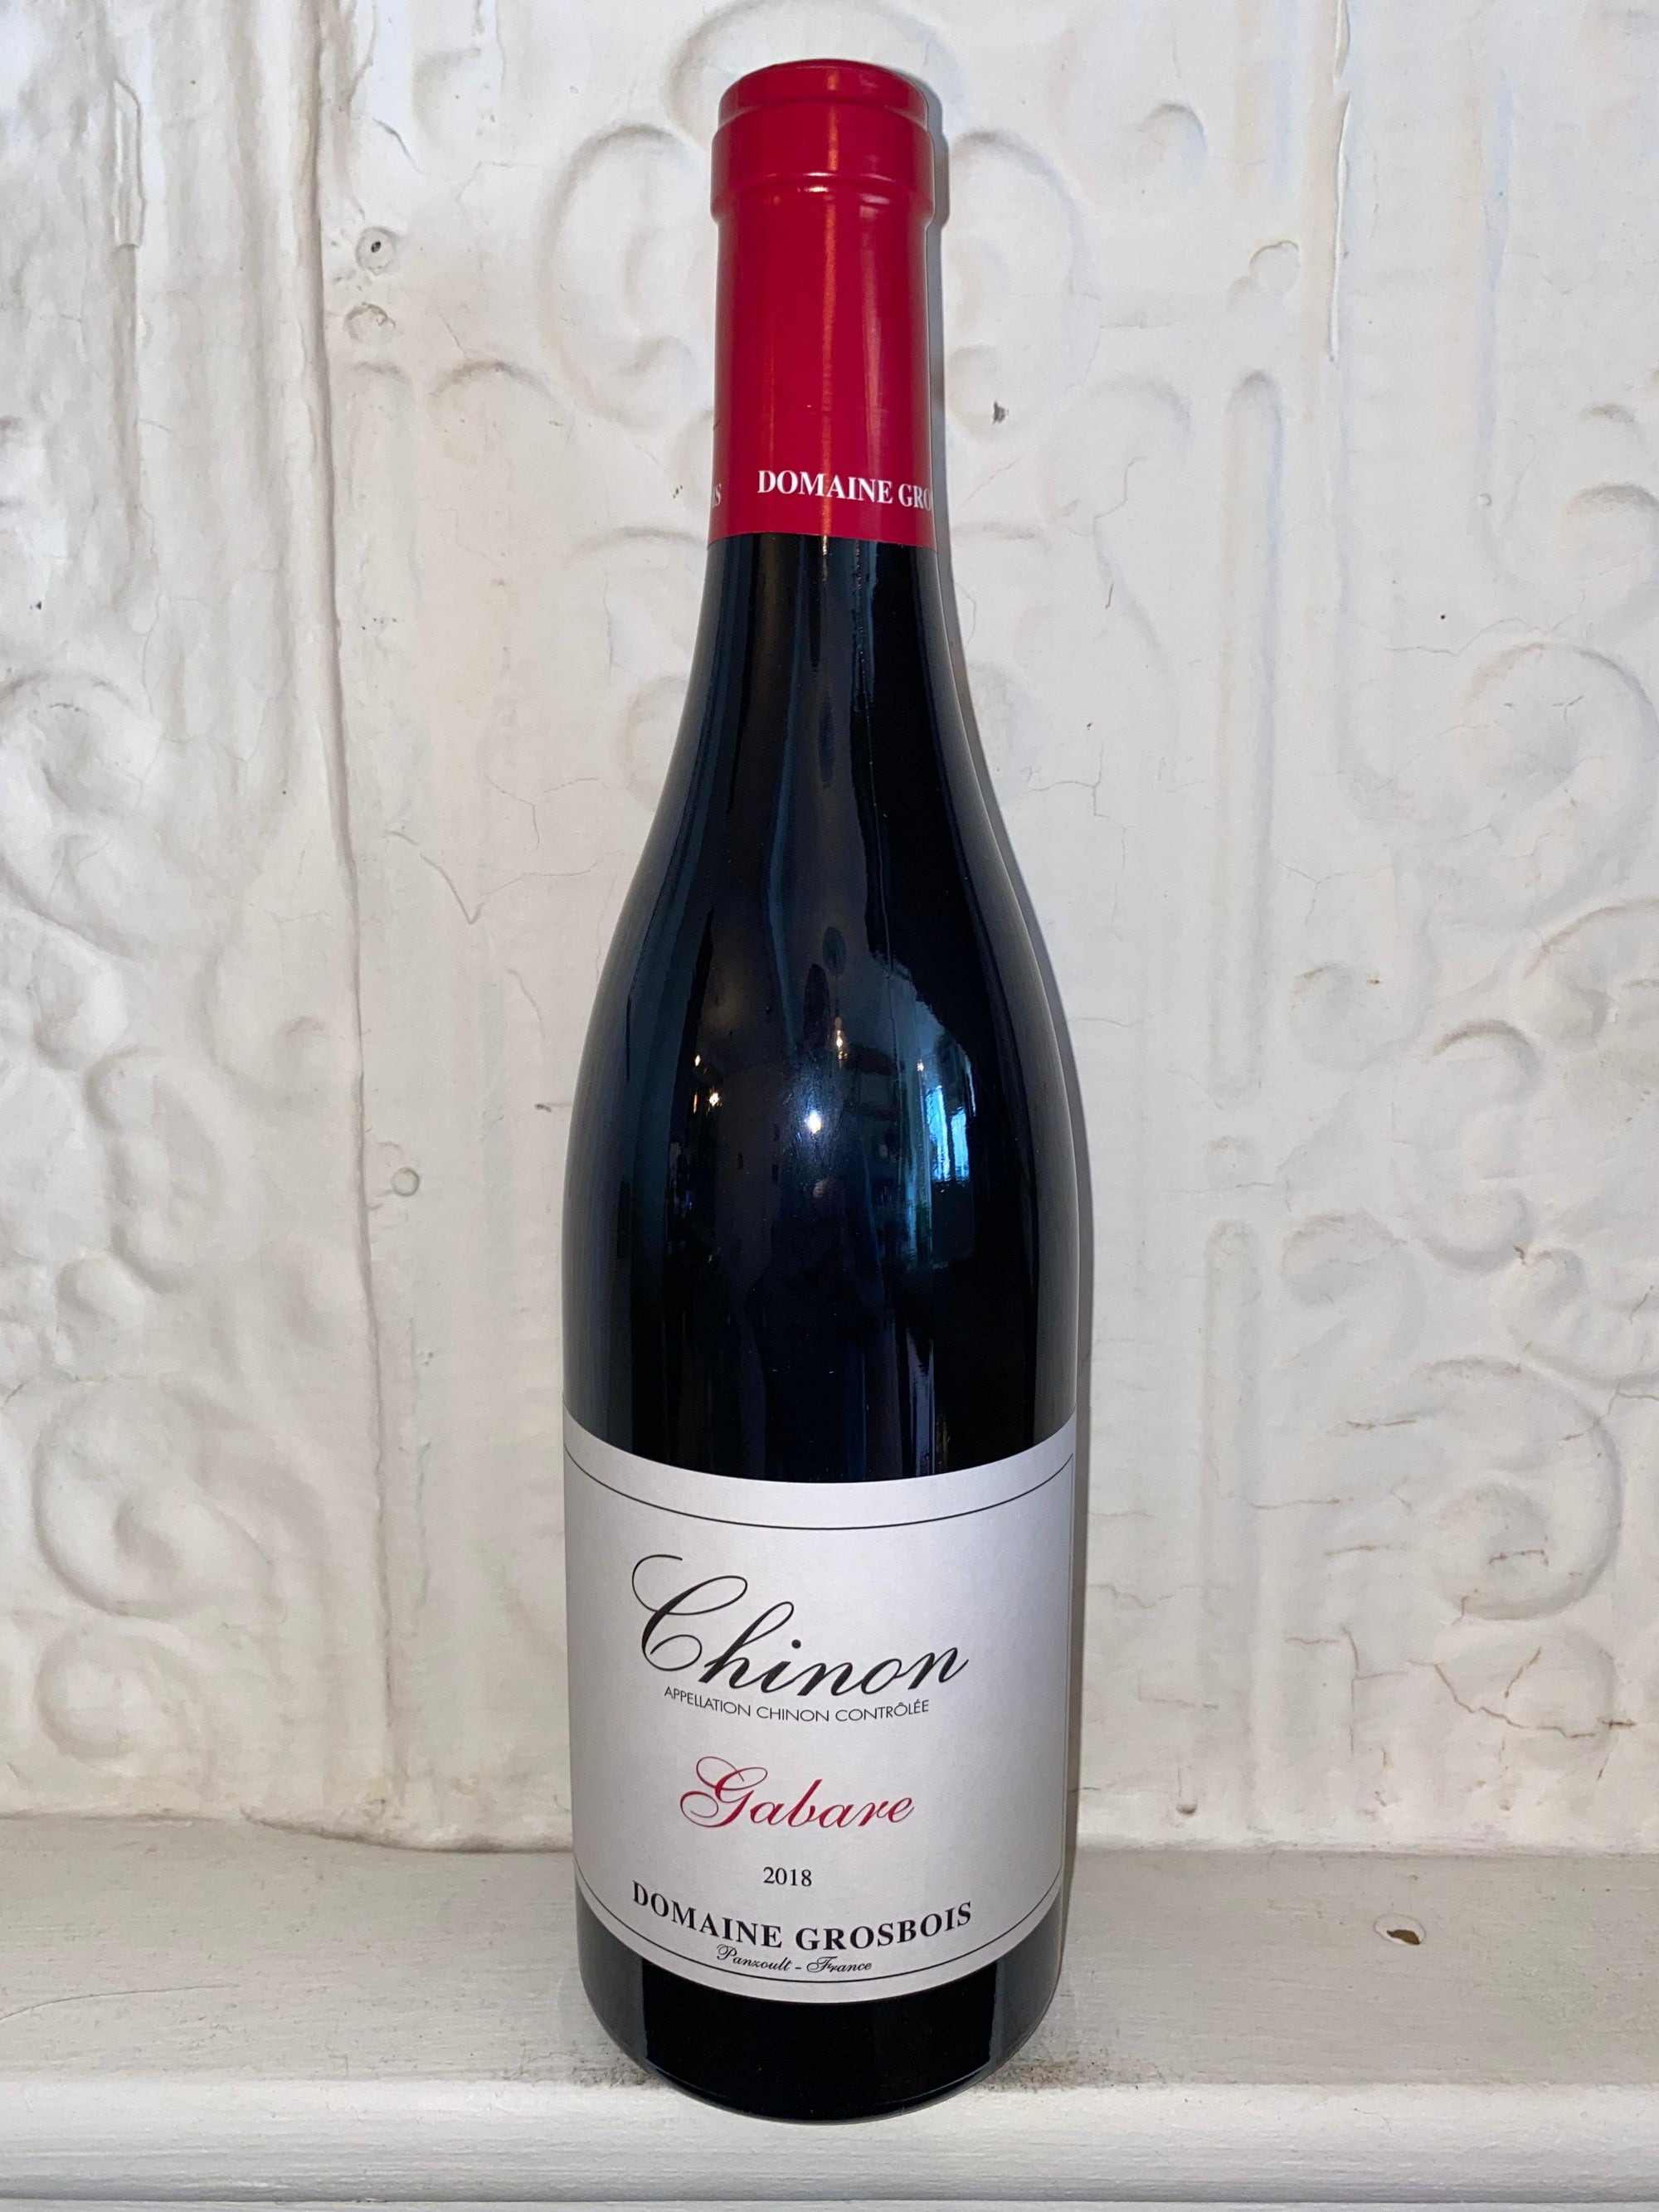 Chinon Gabare, Domaine Grosbois 2018 (Loire Valley, France)-Wine-Bibber & Bell